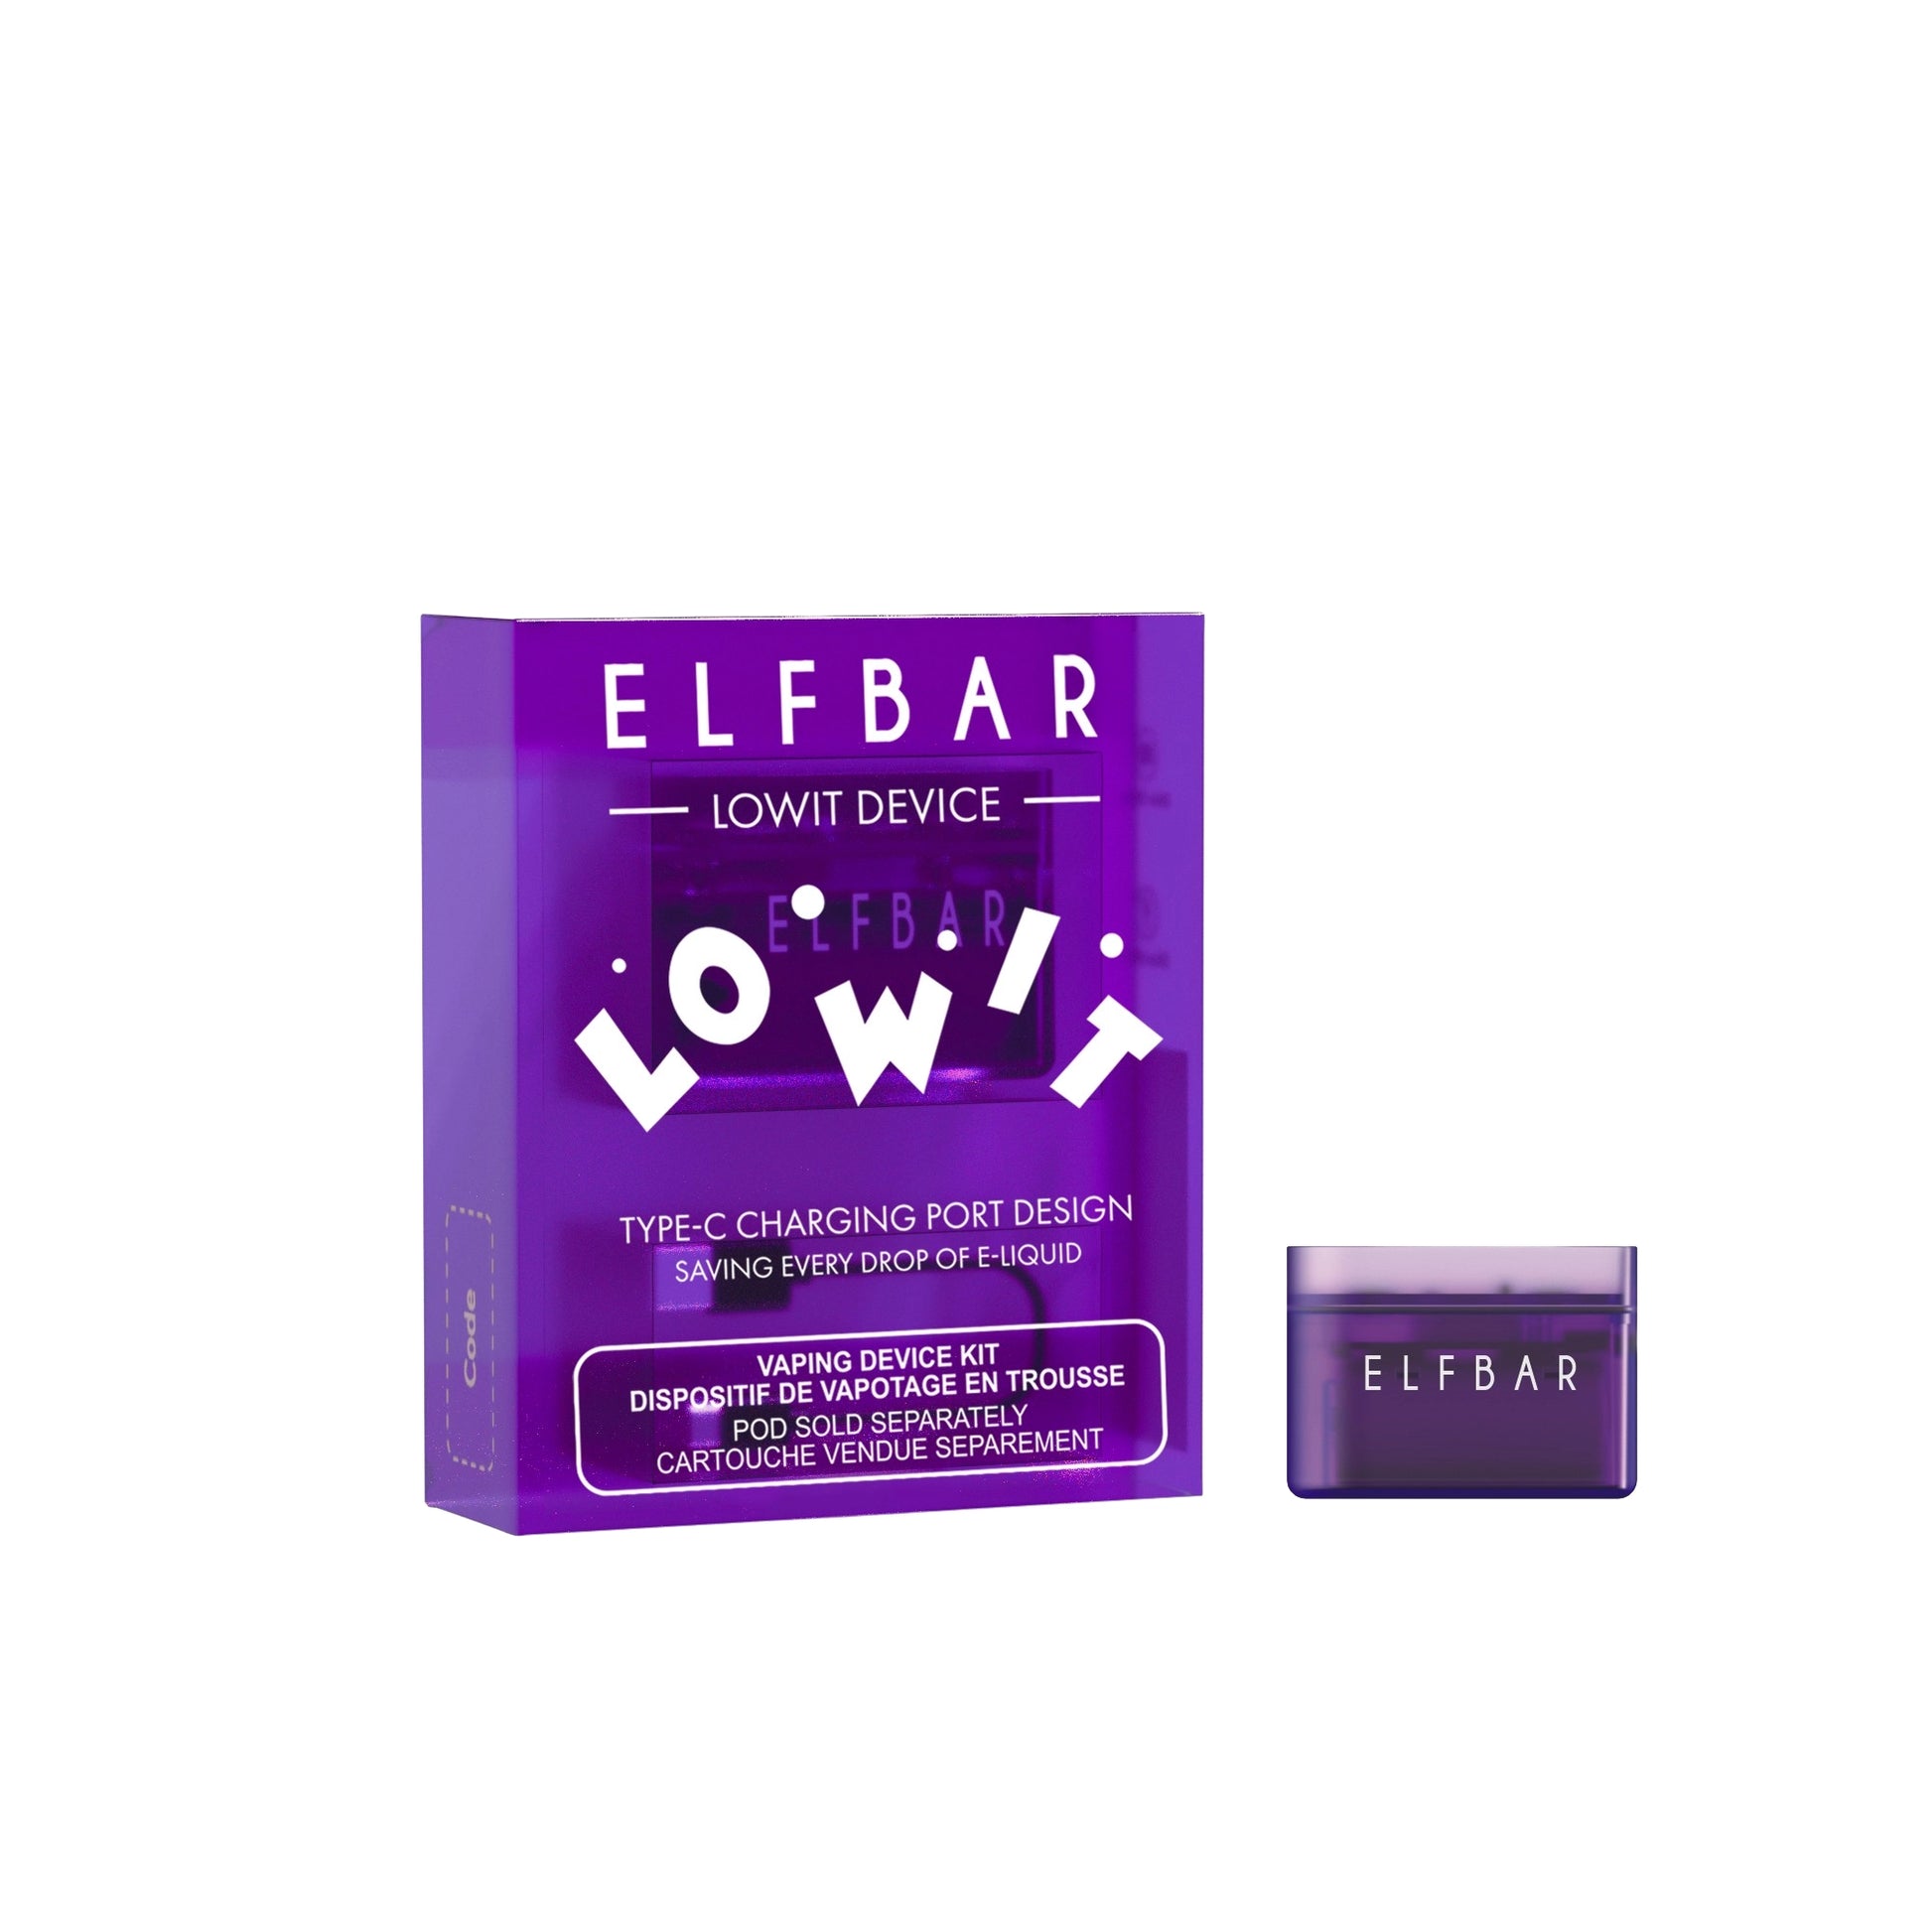 ELFBAR_Lowit_Pod_Vape_Battery_Device_Purple